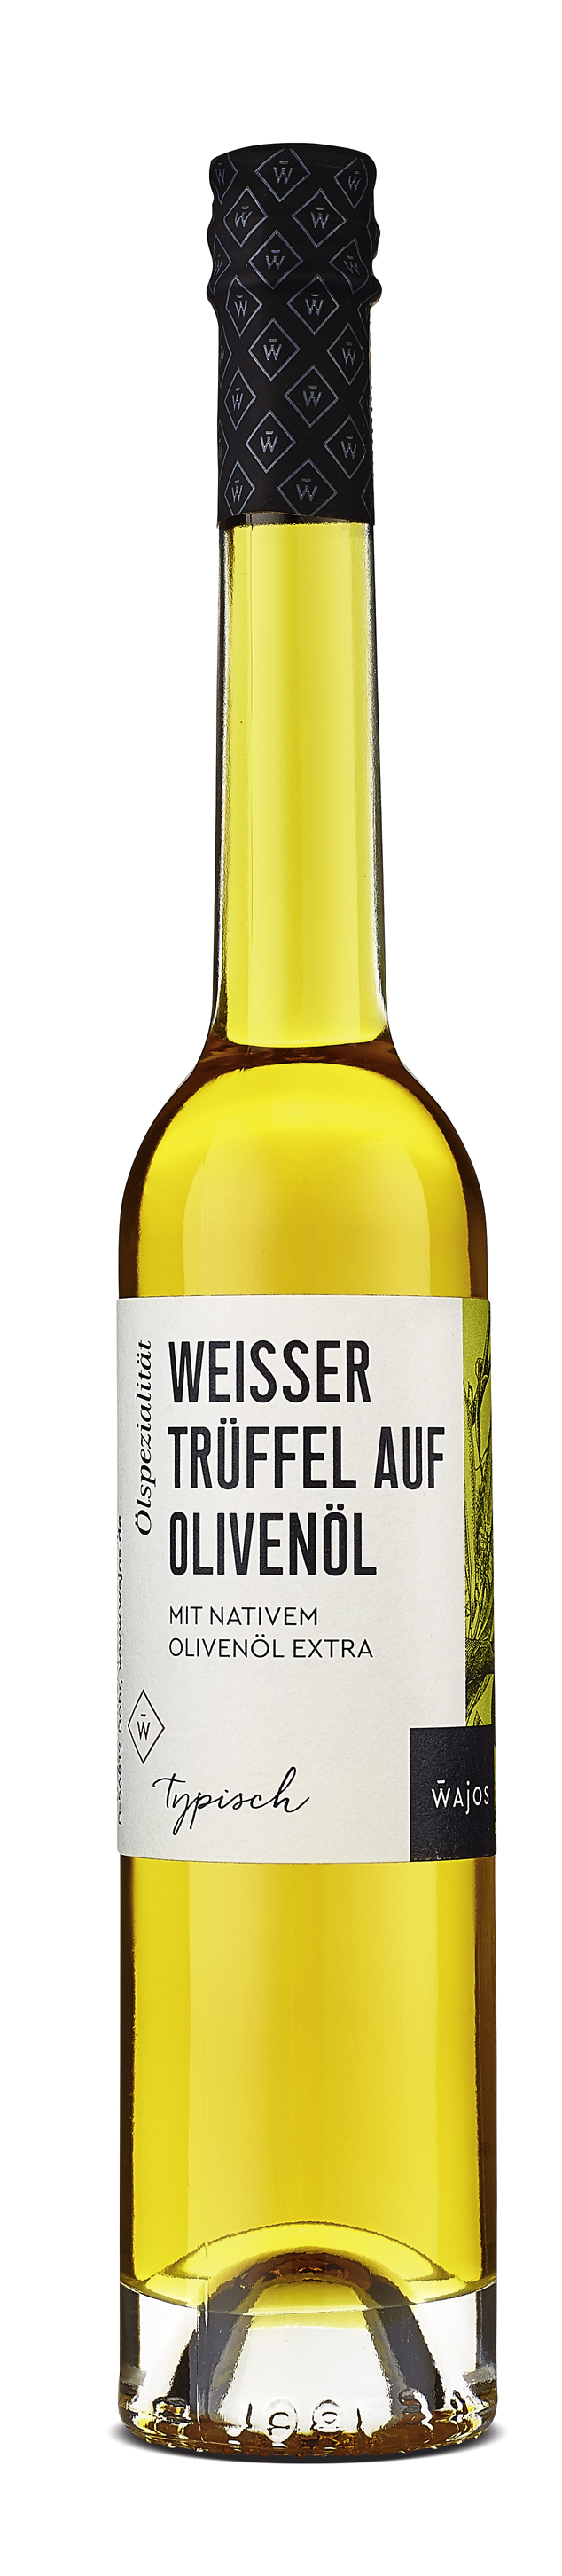 Weisser Trüffel auf Olivenöl mit nativem Olivenöl extra